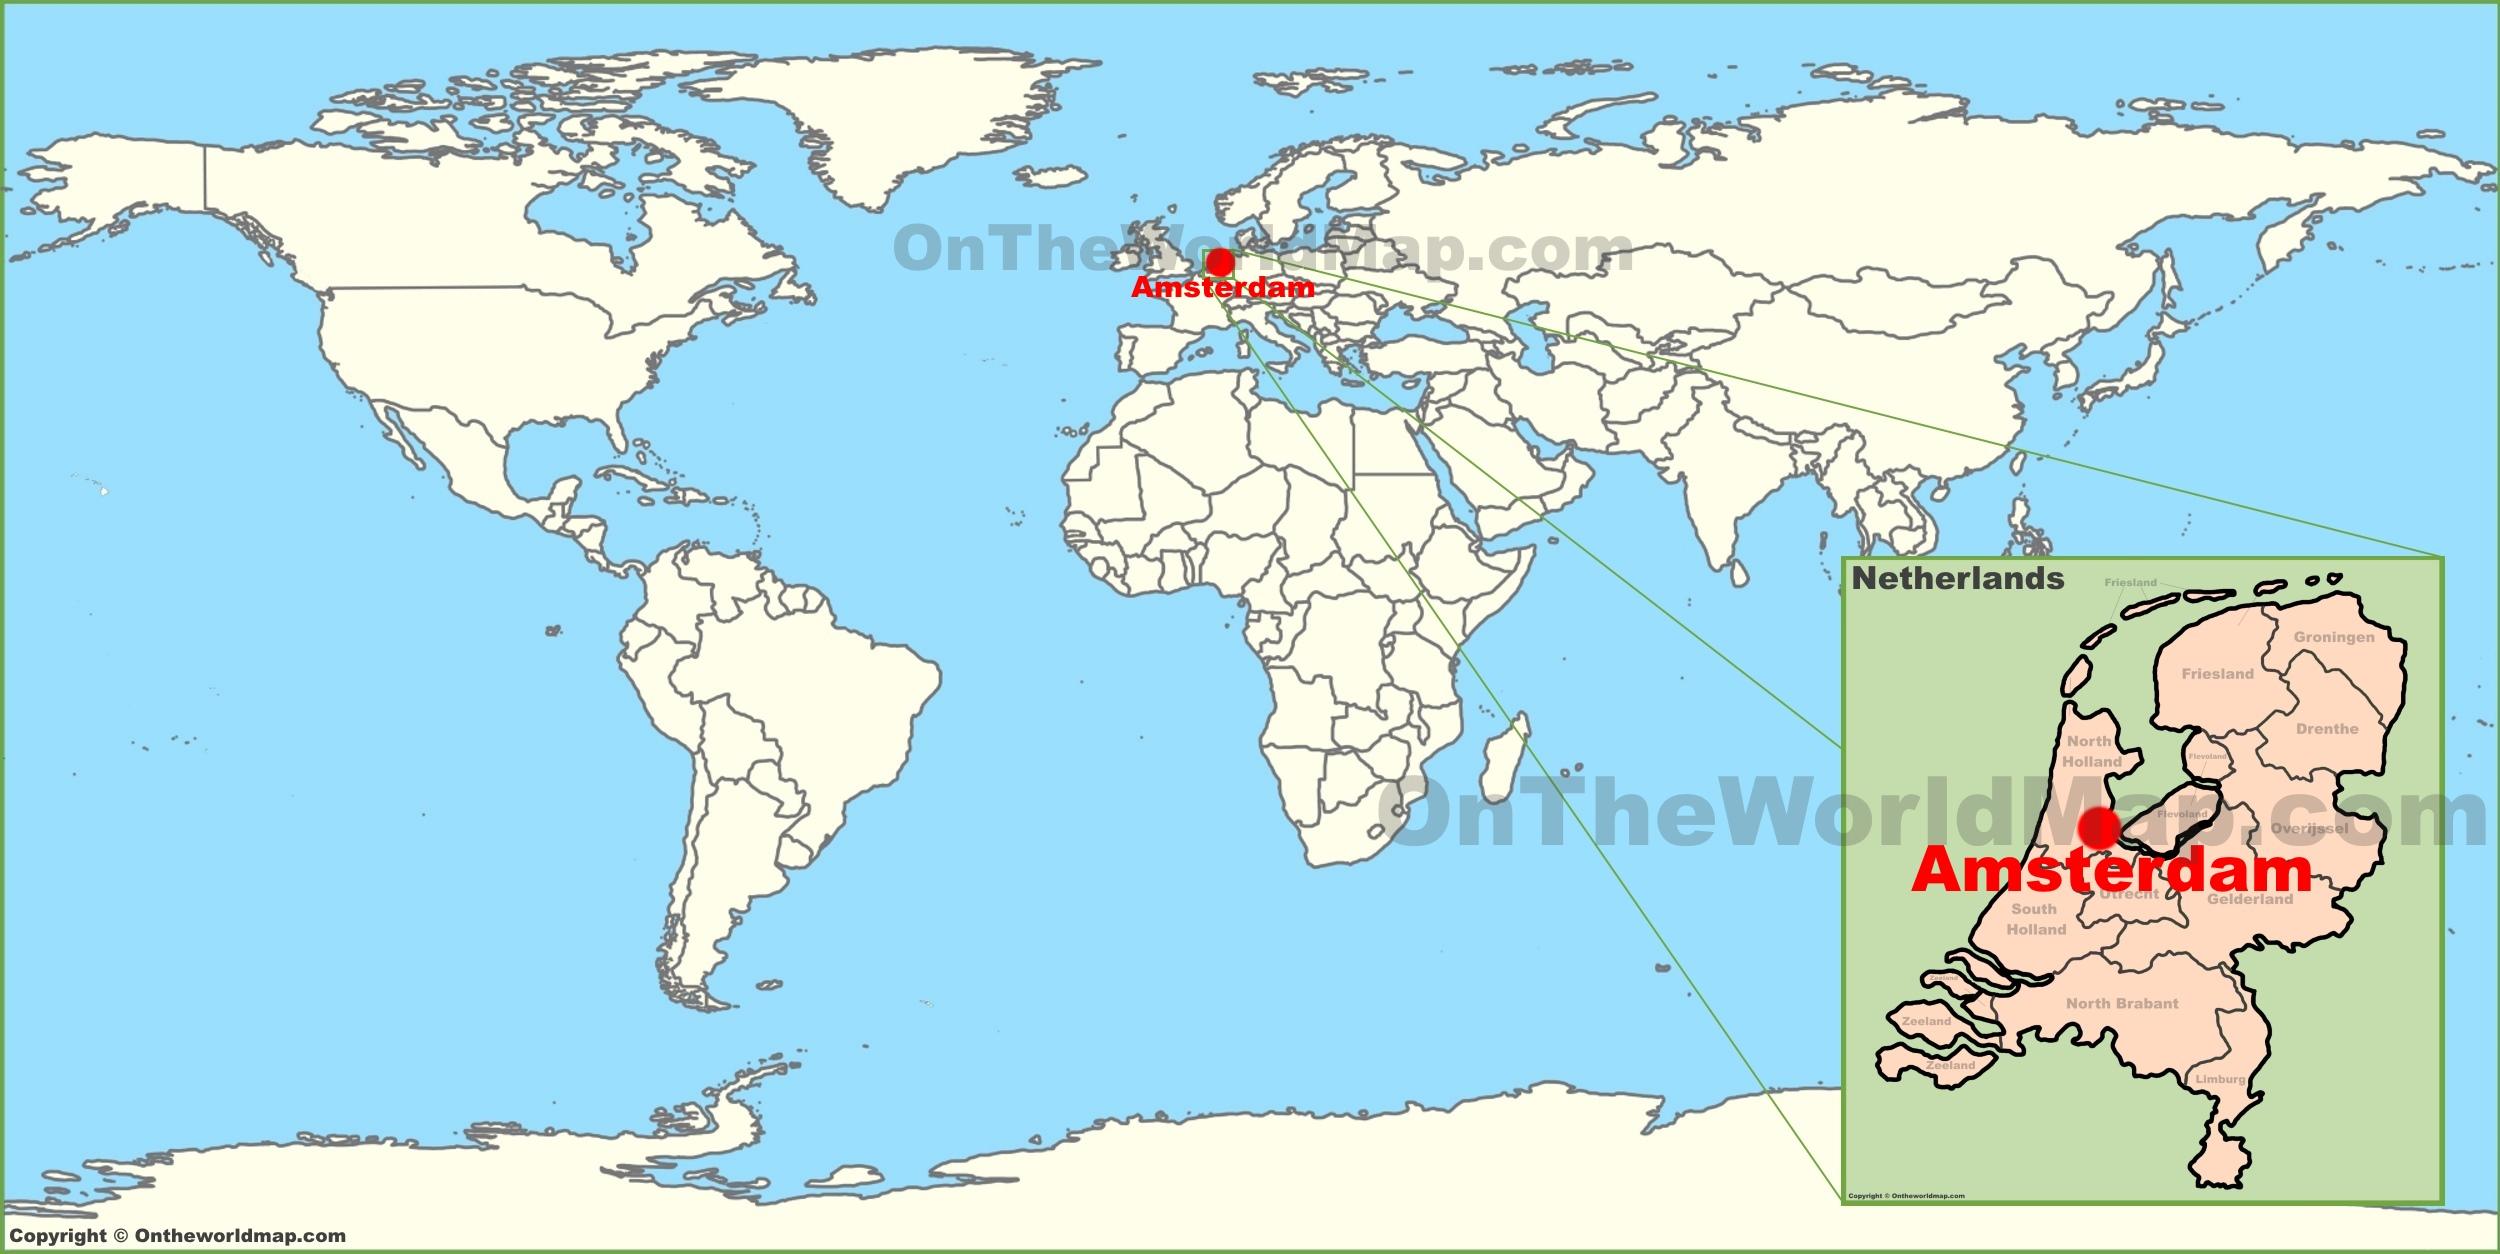 karta svijeta europa Nizozemska karta svijeta   Holandija na karti svijeta (Zapadna  karta svijeta europa